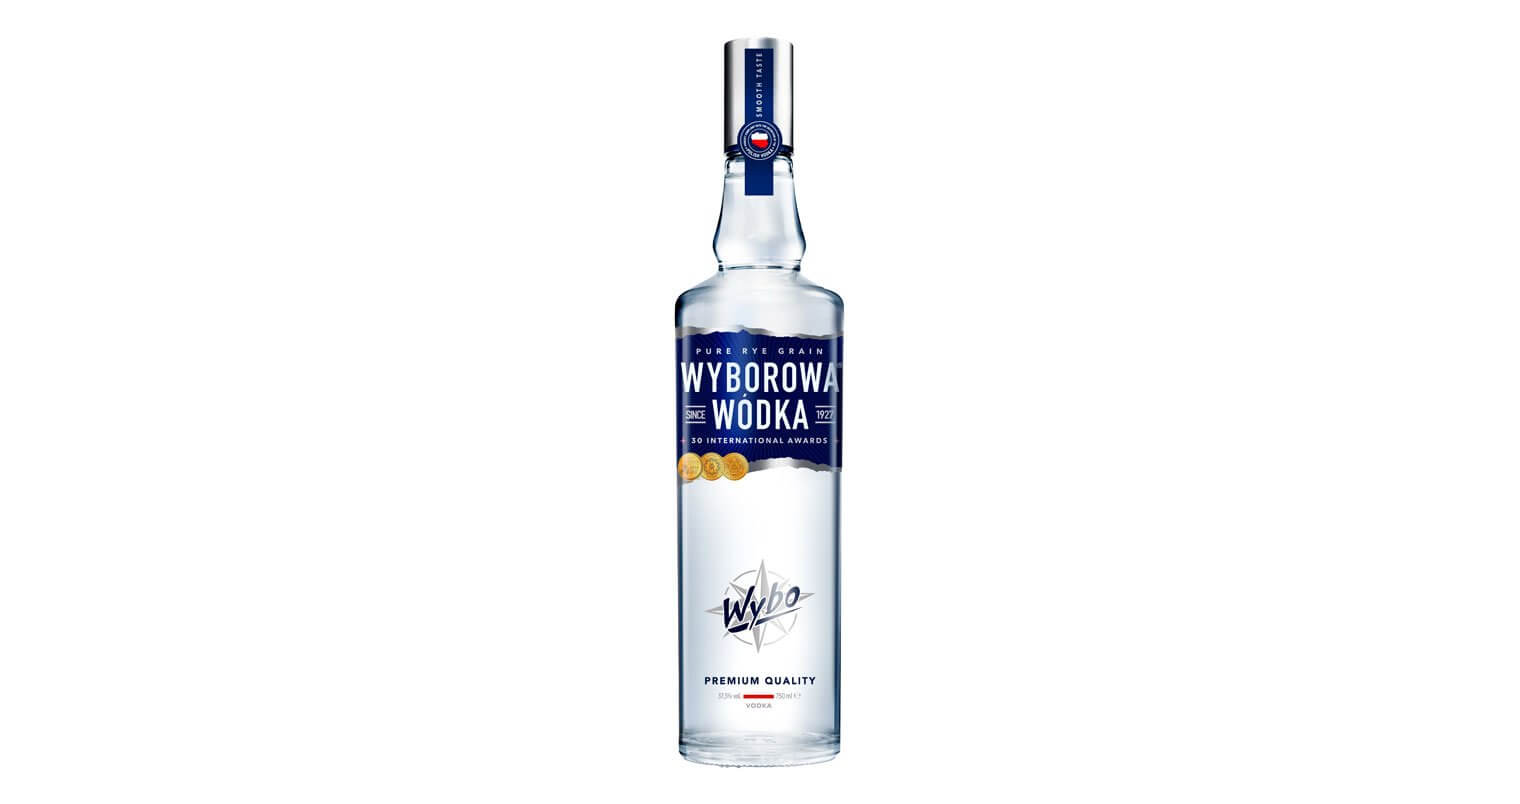 Wyborowa Vodka Shots, bottle on white